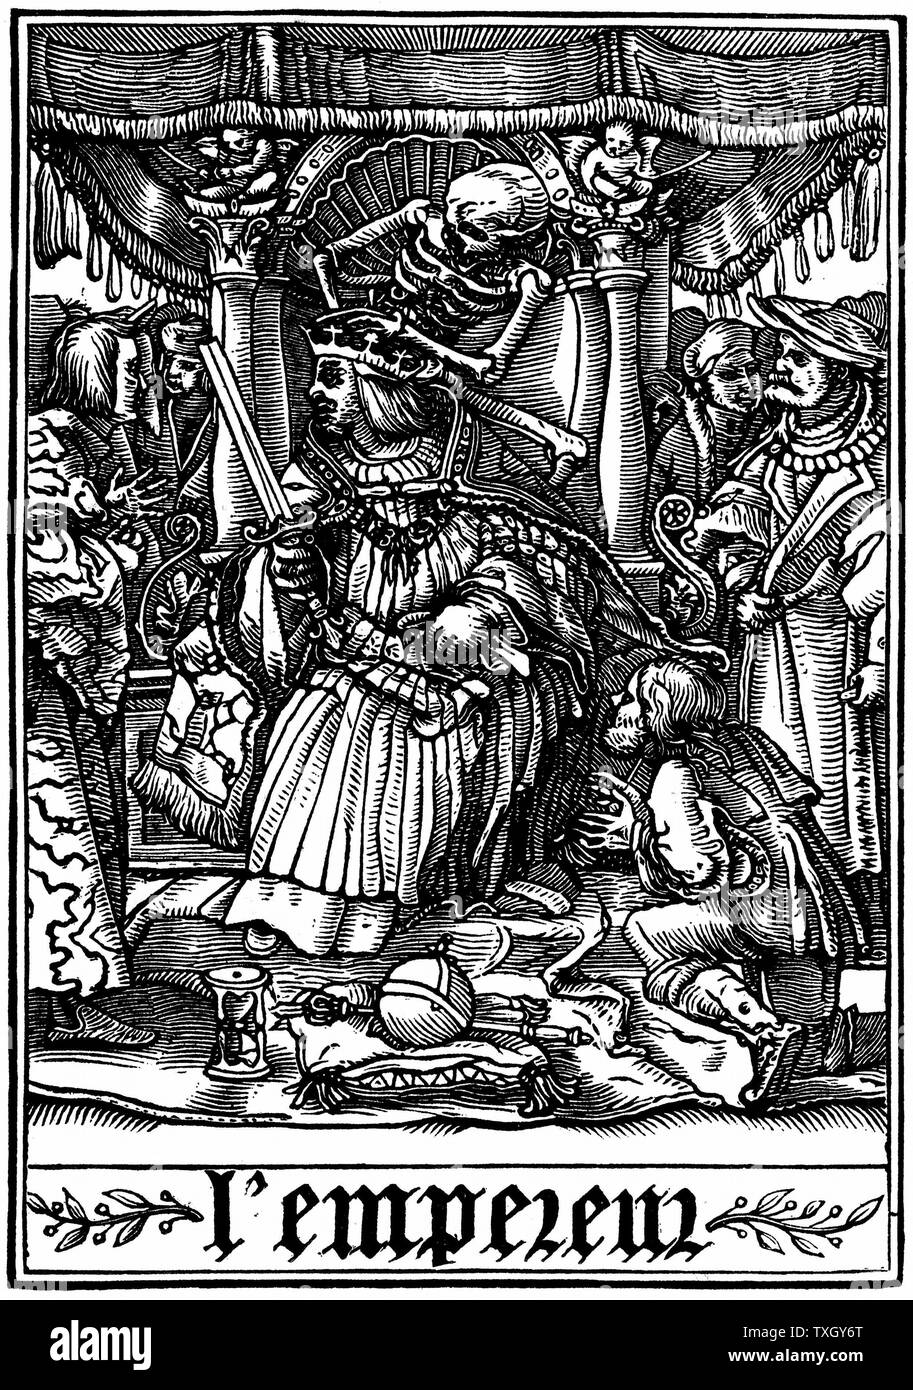 L'Empereur s'est rendu par la mort de Hans Holbein le Jeune 'Les simulacres de la Mort" (La danse de mort) 1538 Gravure sur bois Banque D'Images